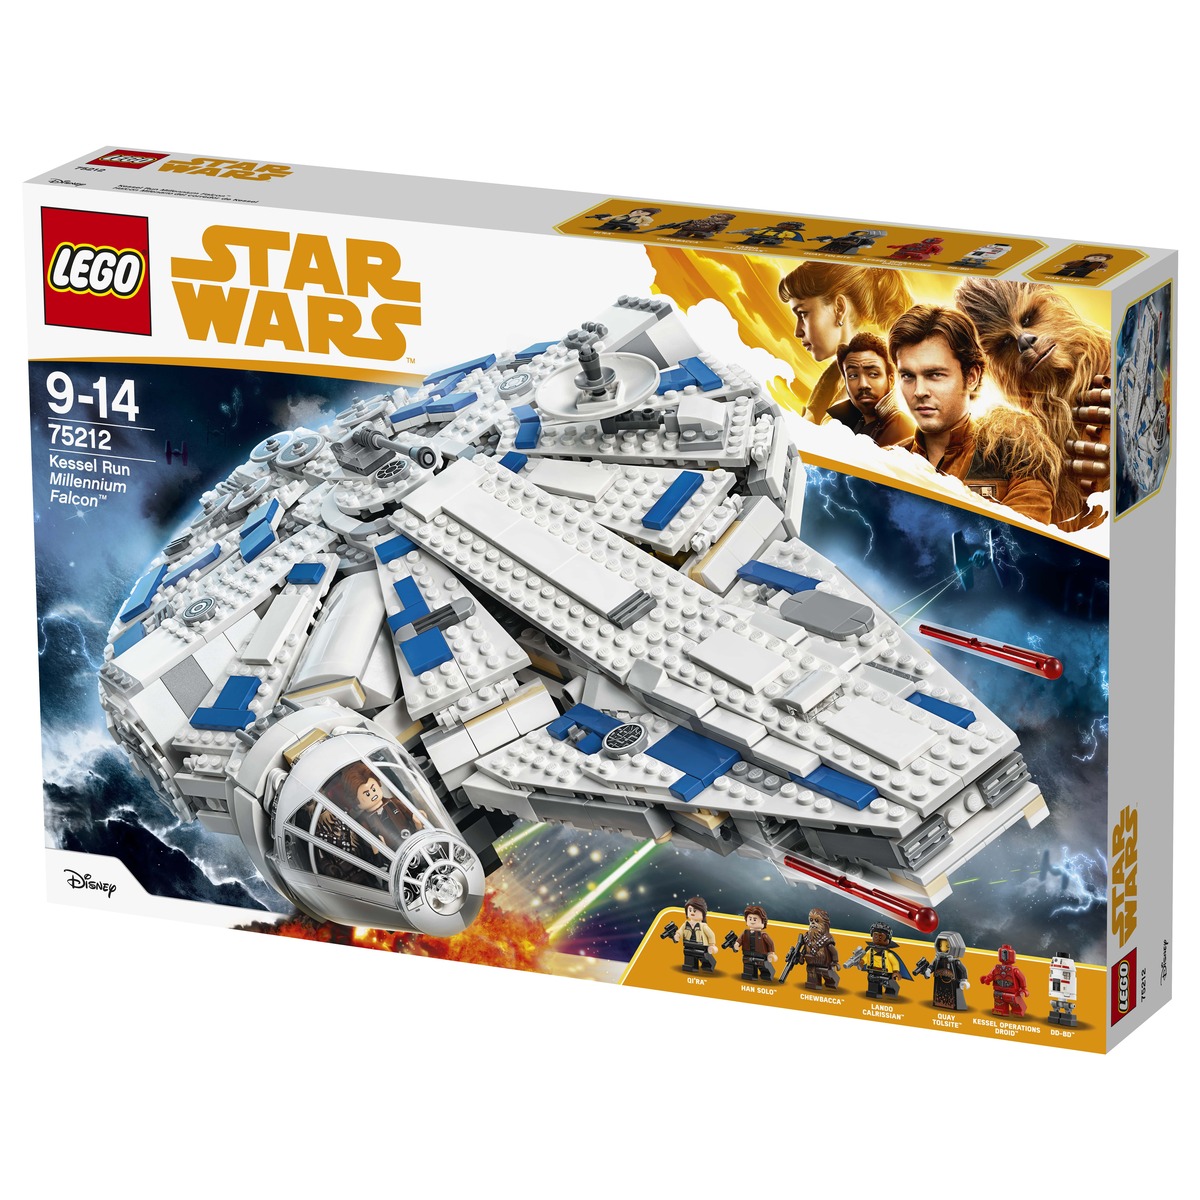 Новые наборы LEGO Star Wars, посвященные истории Хана Соло